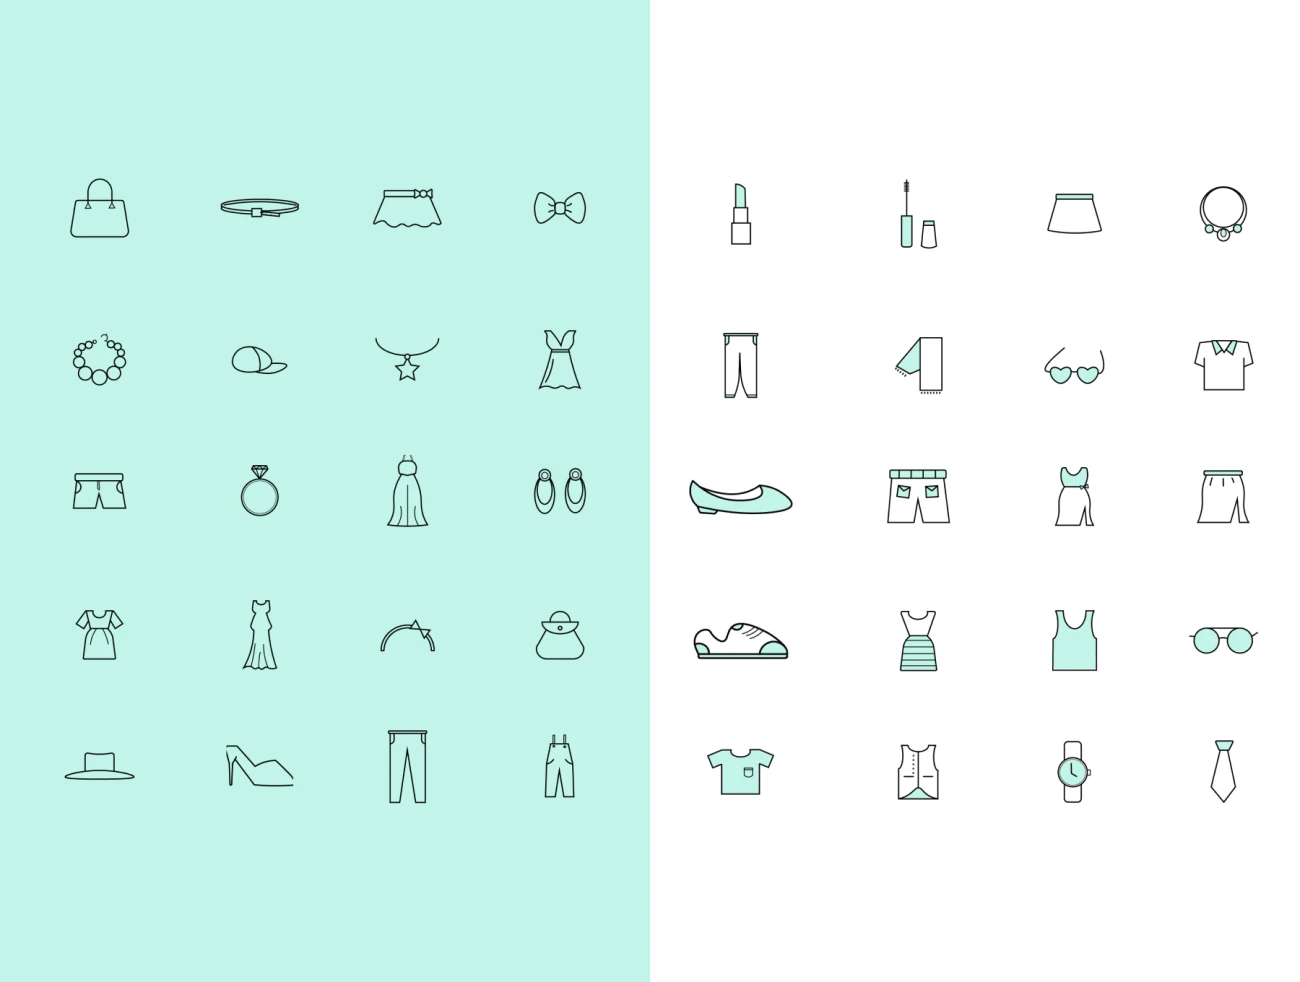 40款服饰配件图标素材下载 Clothes & Accessories Icons .sketch .ai插图9